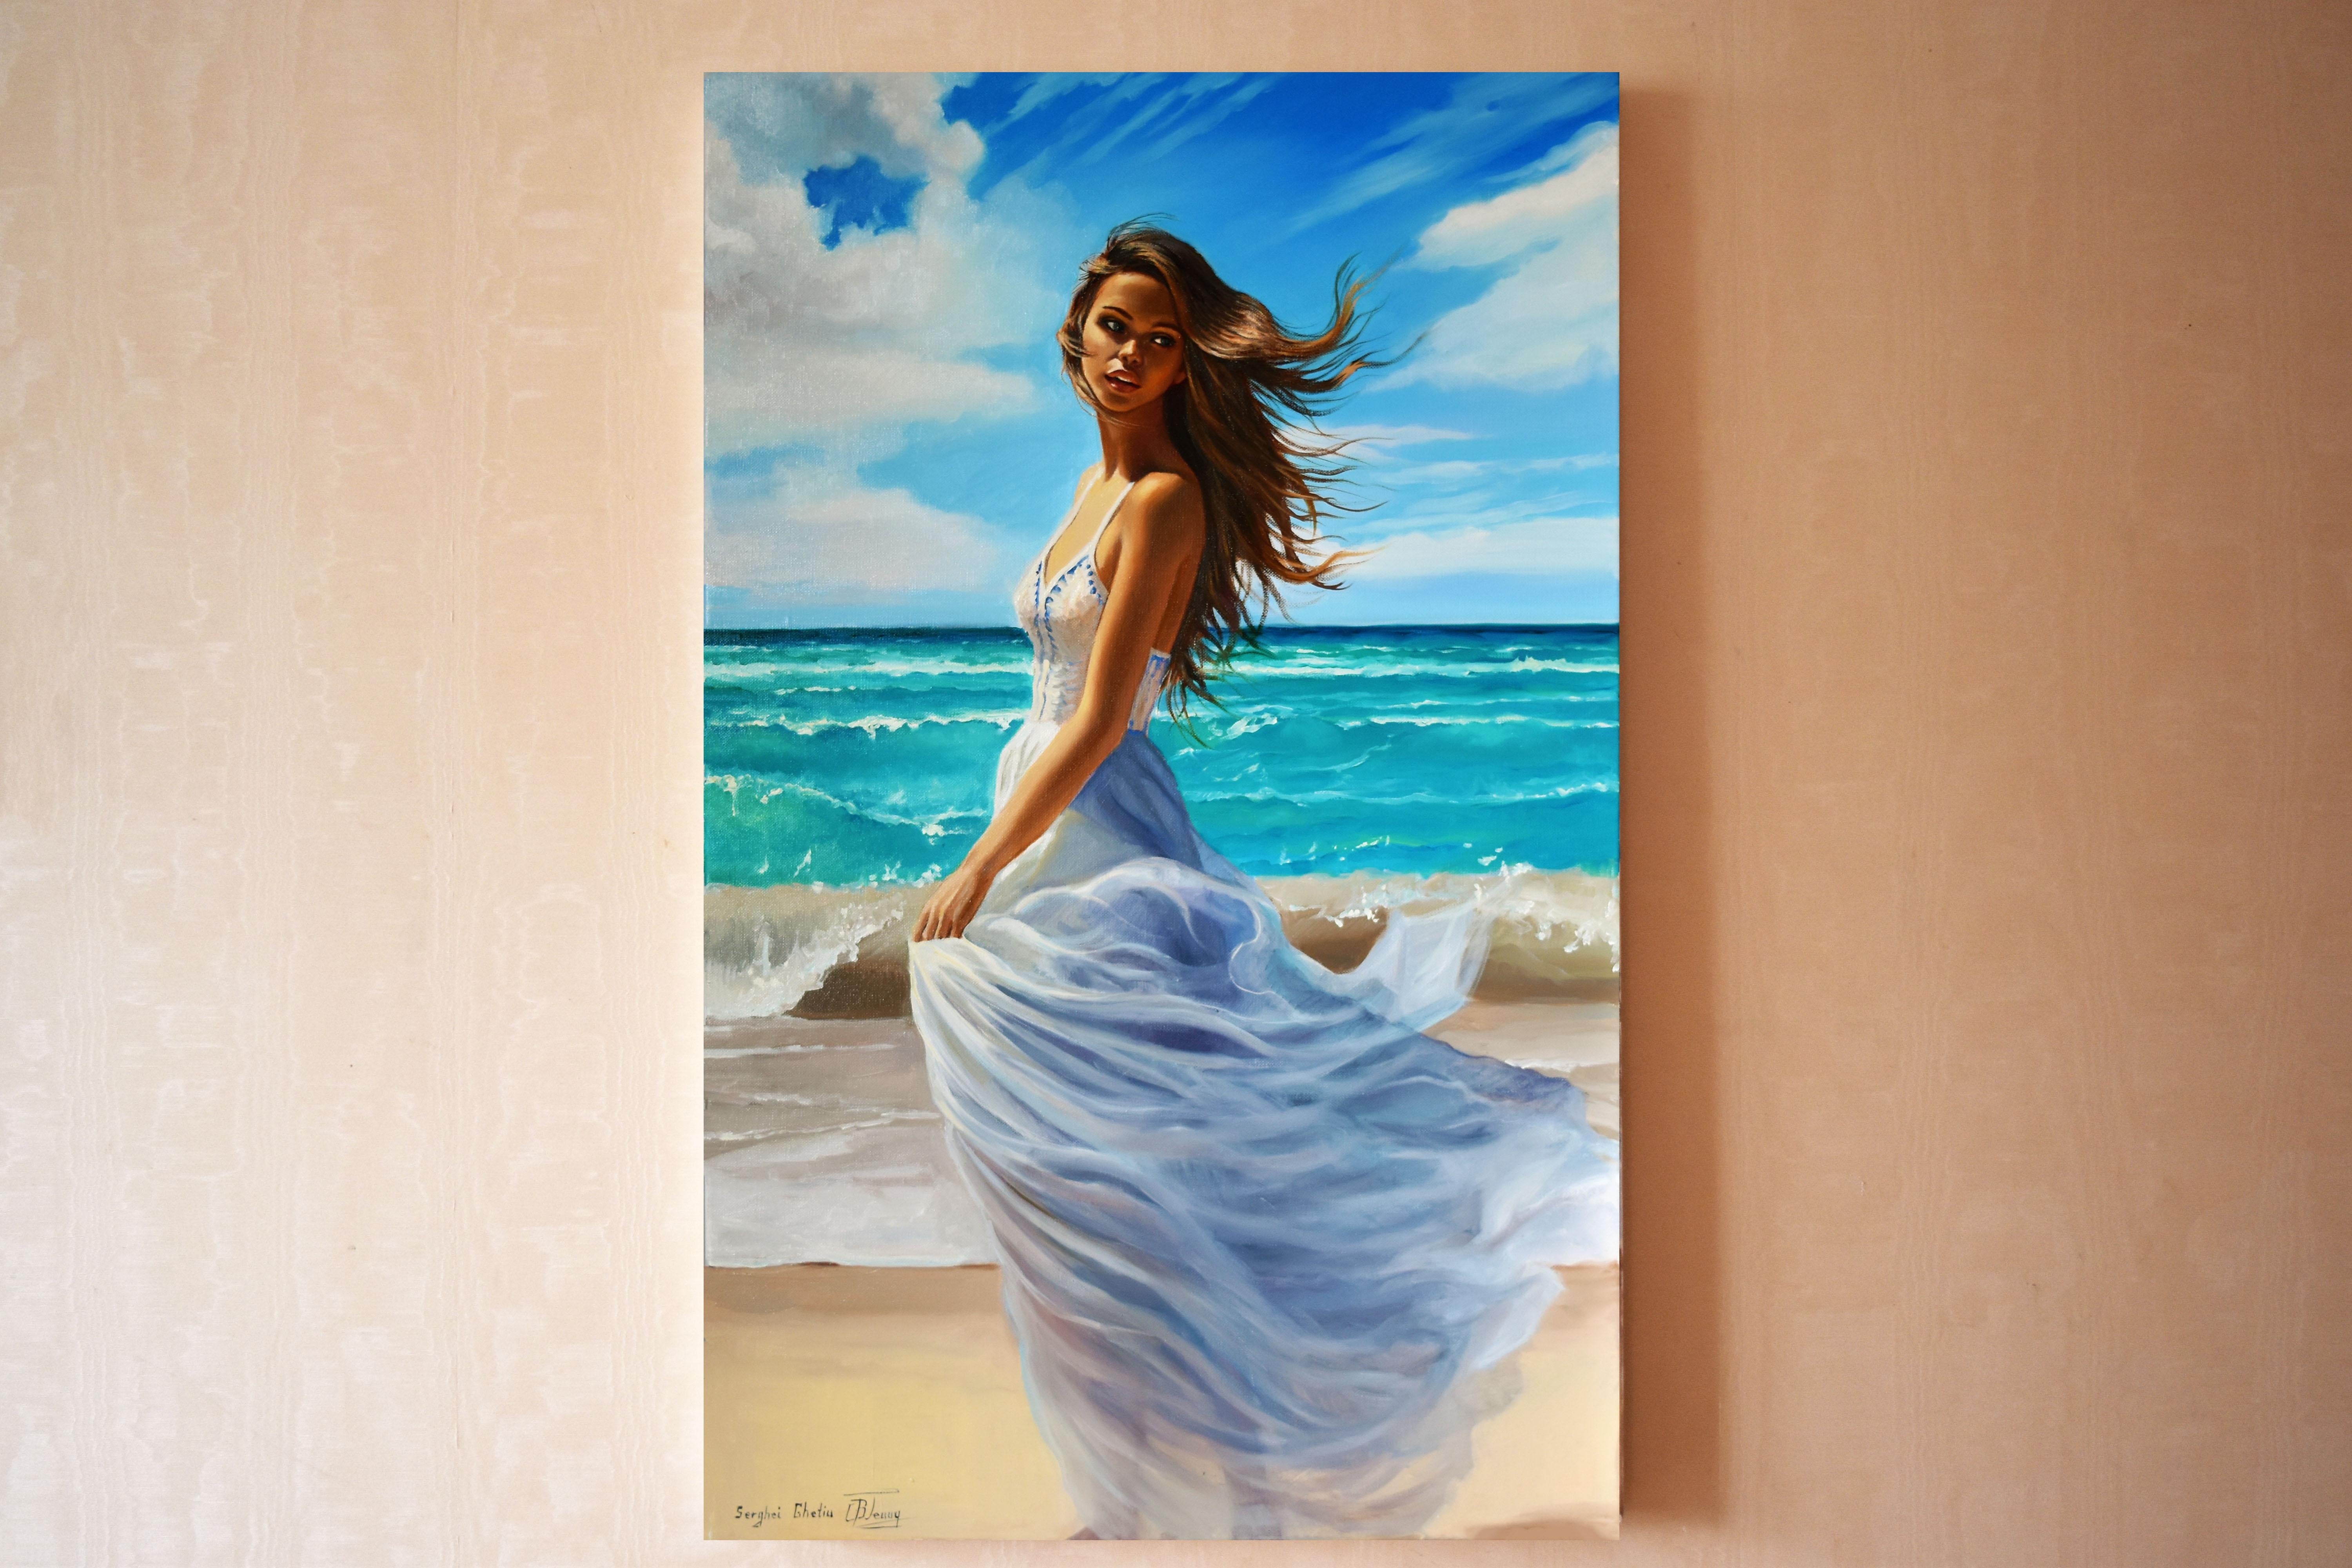 Portrait d'une jeune fille ensoleillée et contrastée au bord de la mer. Les belles vagues de la mer s'écrasent sur la côte. Le vent marin joue avec les cheveux. Une œuvre d'art qui fait entrer l'été et la mer dans votre maison tout au long de